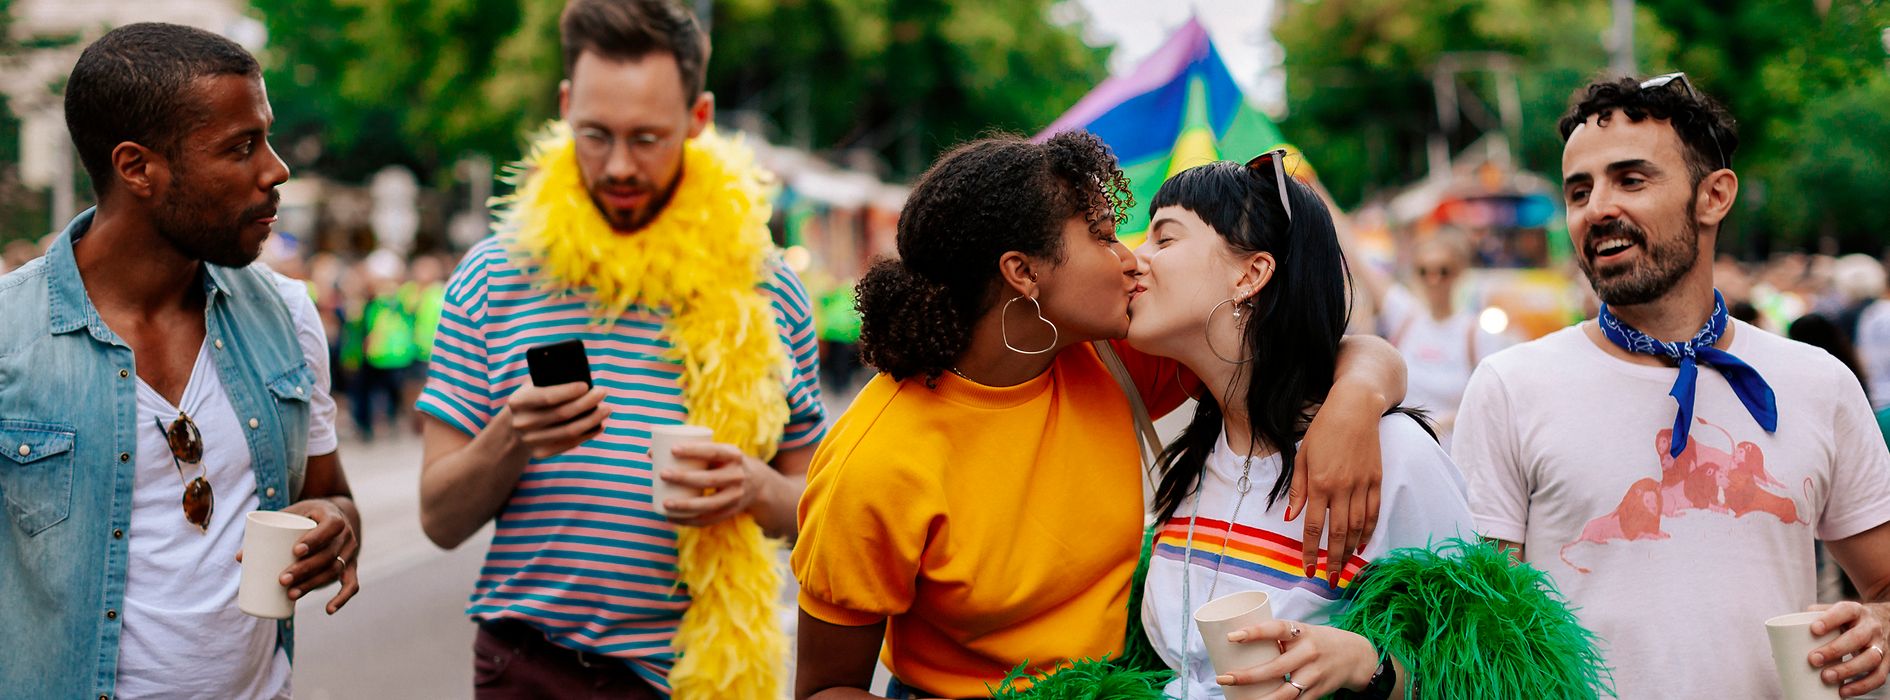 Amigos gays y lesbianas en el Desfile del Arco Iris